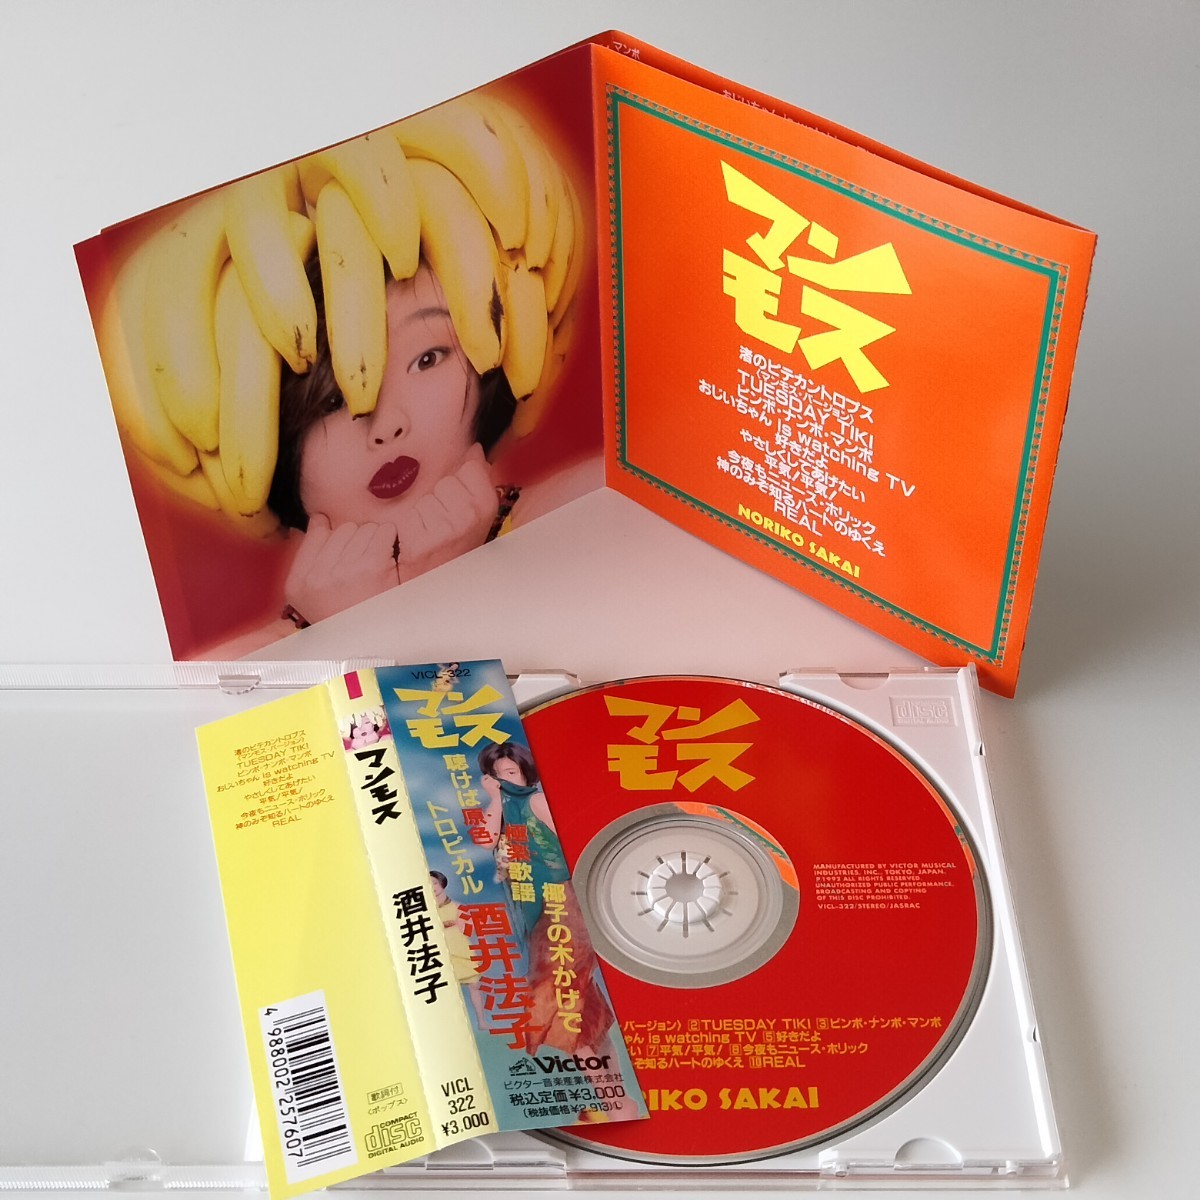 【帯付CD】酒井法子 / マンモス (VICL-322) 1992年アルバム NORIKO SAKAI のりピー さいとうみわこ_画像5